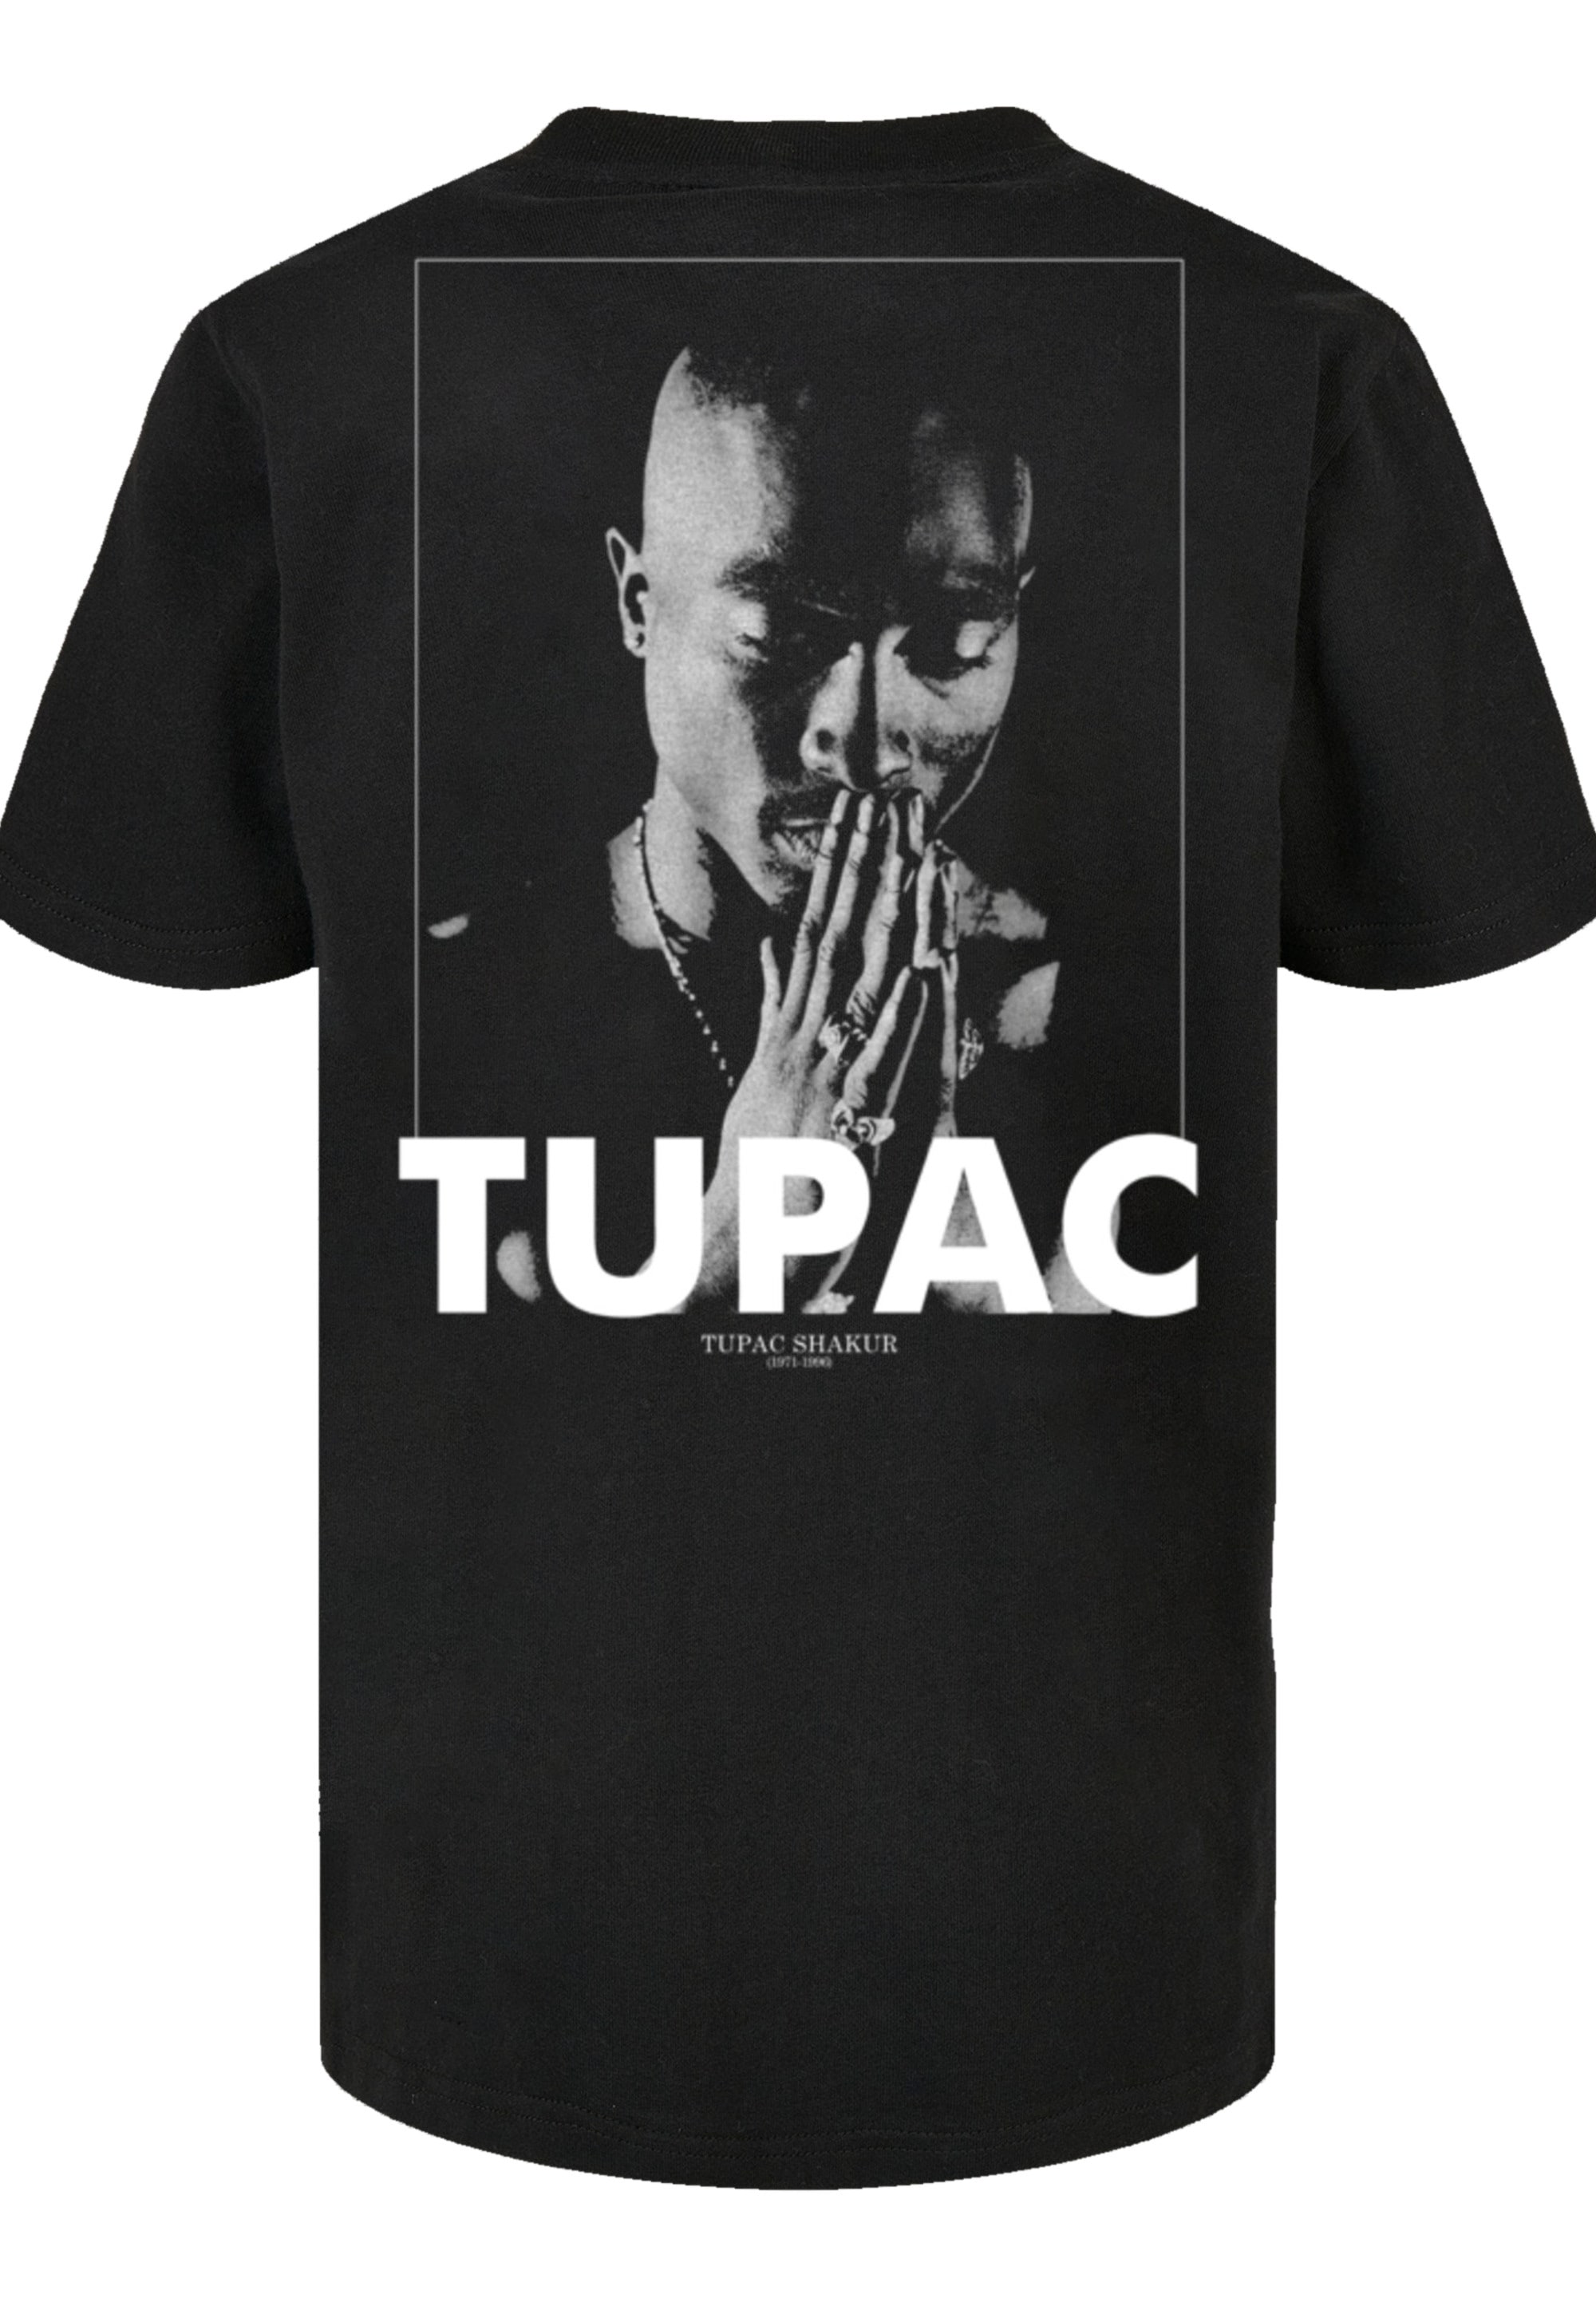 F4NT4STIC Marškinėliai »Tupac Shakur Praying« Pr...